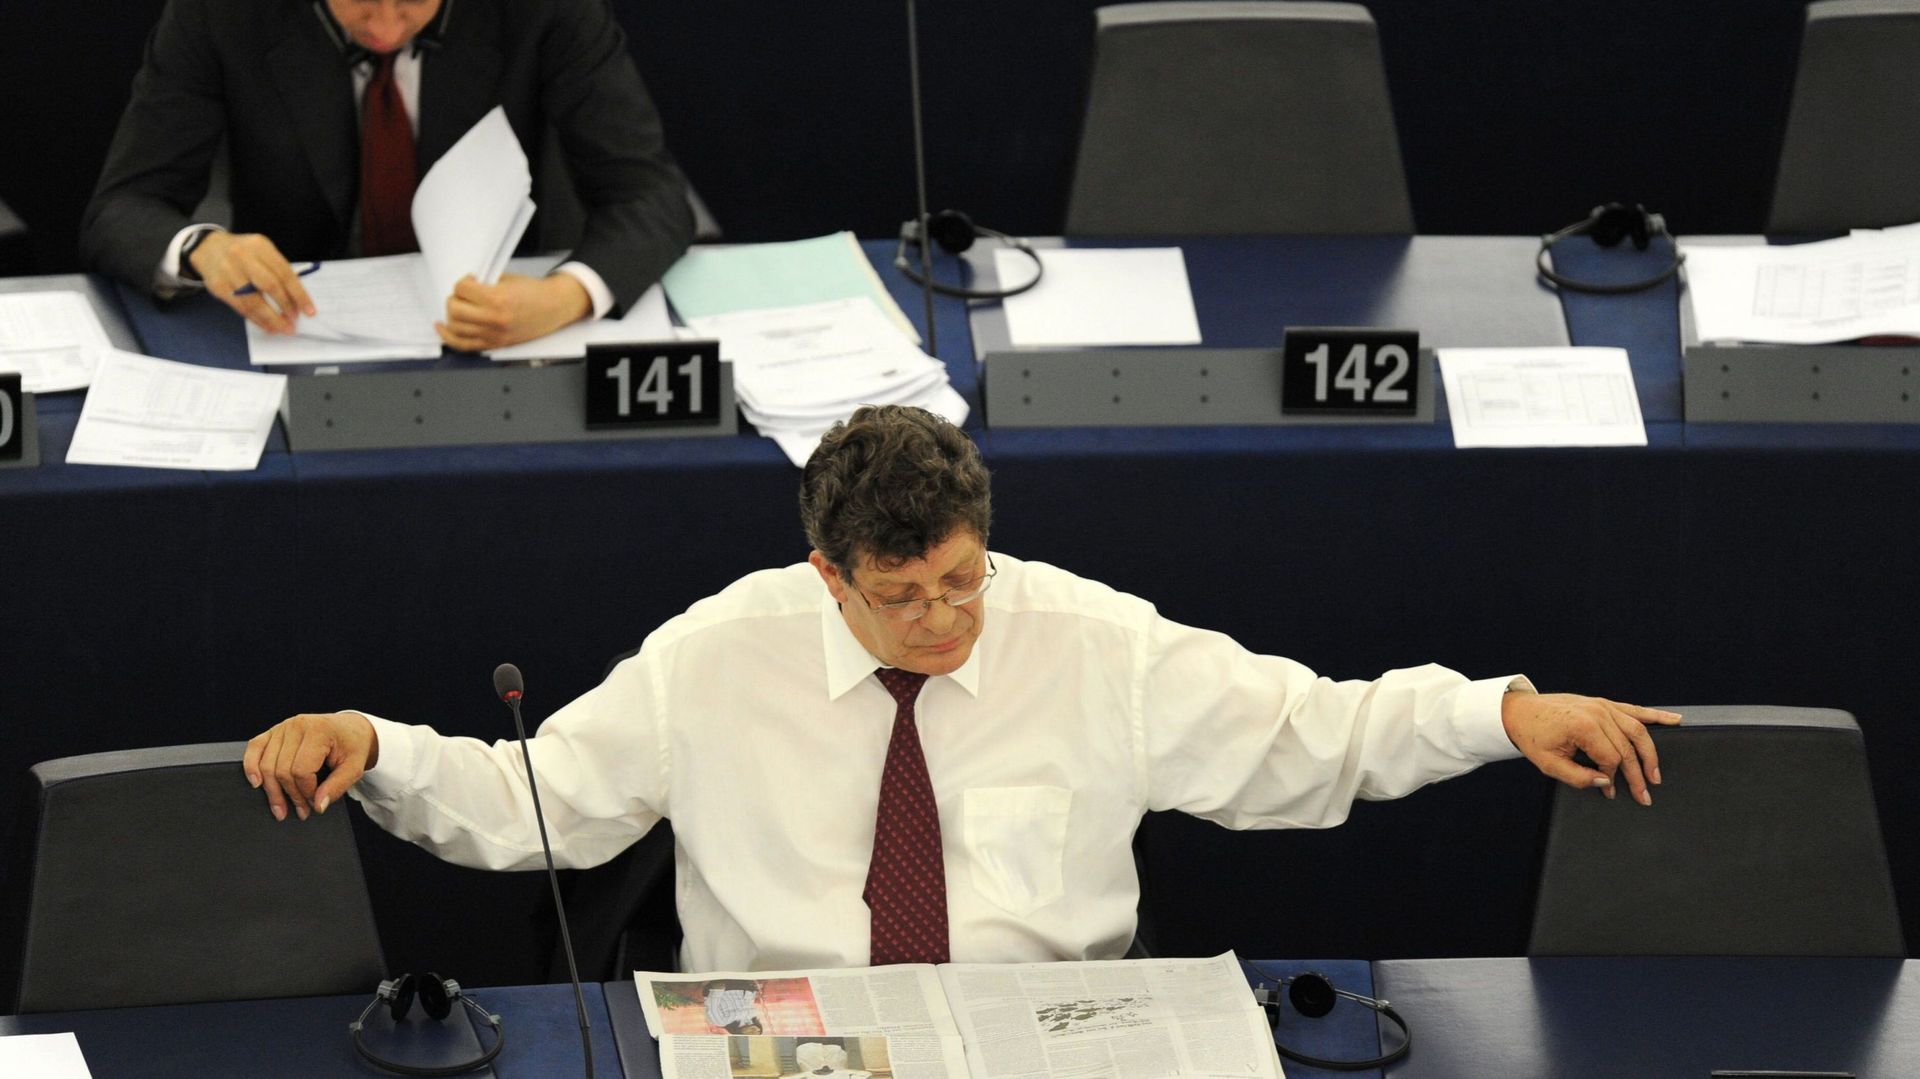 Les eurodéputés veulent augmenter leur budget mensuel de personnel